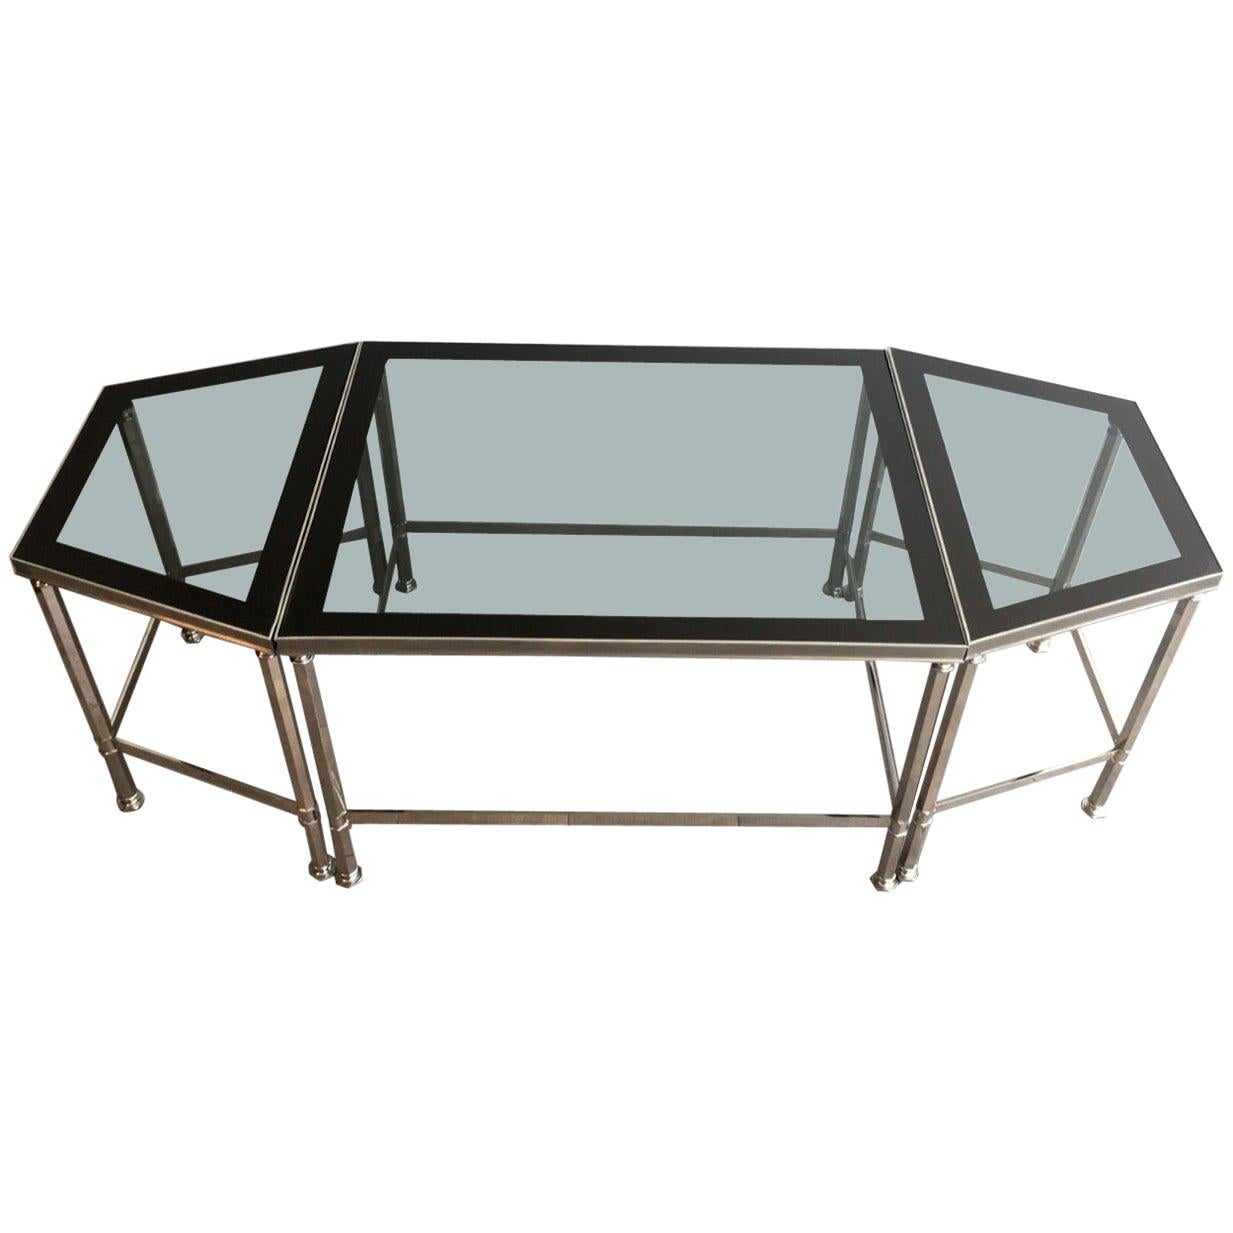 Rare table basse tripartie en nickel avec plateaux en verre laqué tout autour